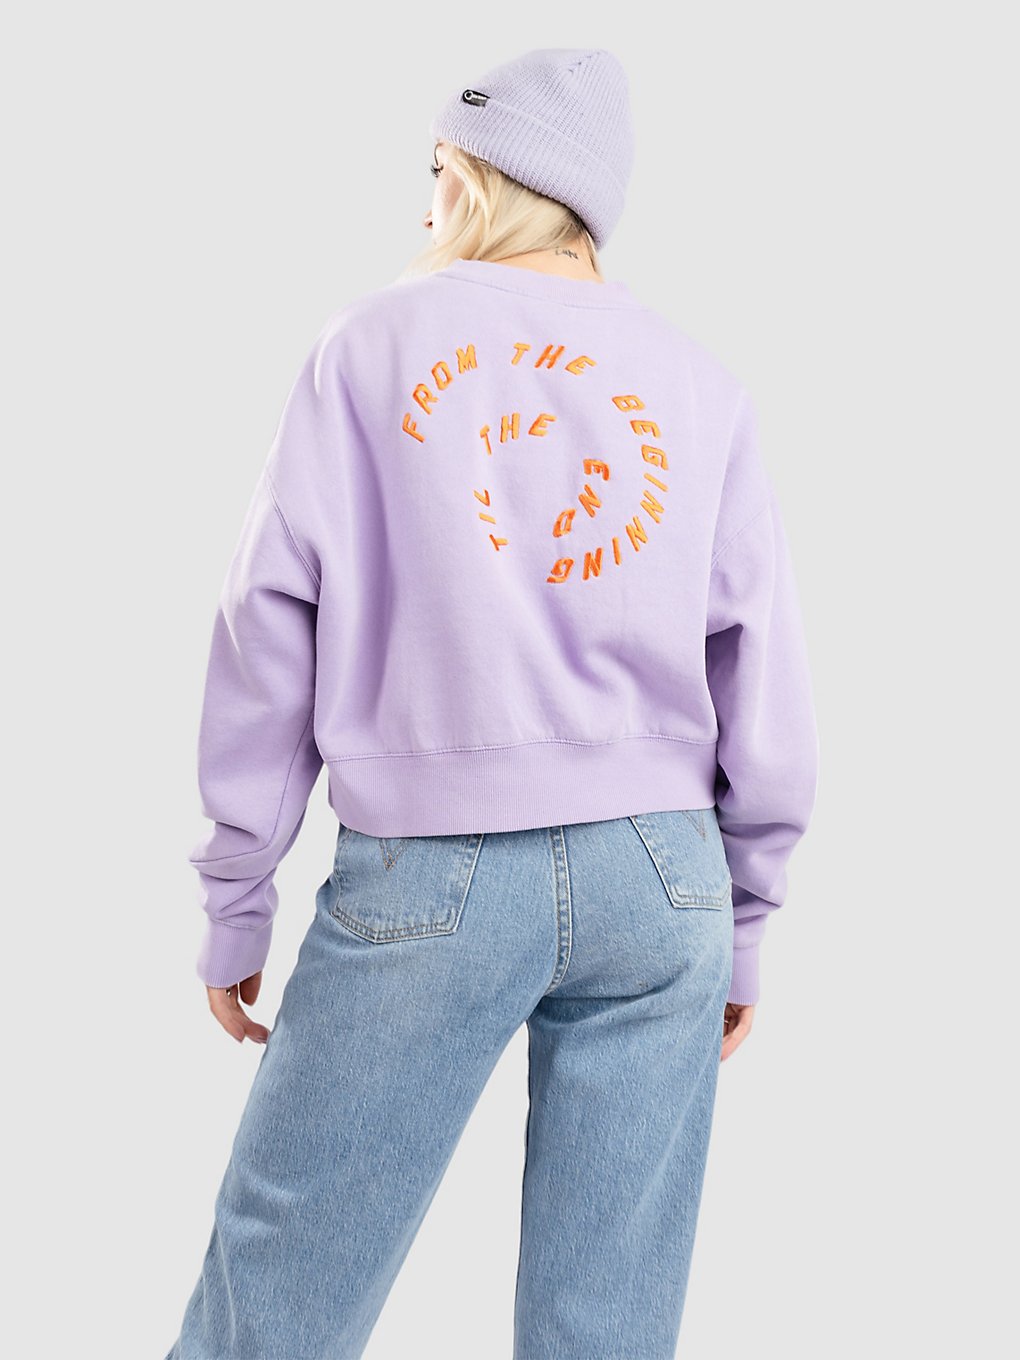 Santa Cruz TTE Swirl Crew Sweater lavender acid wash kaufen